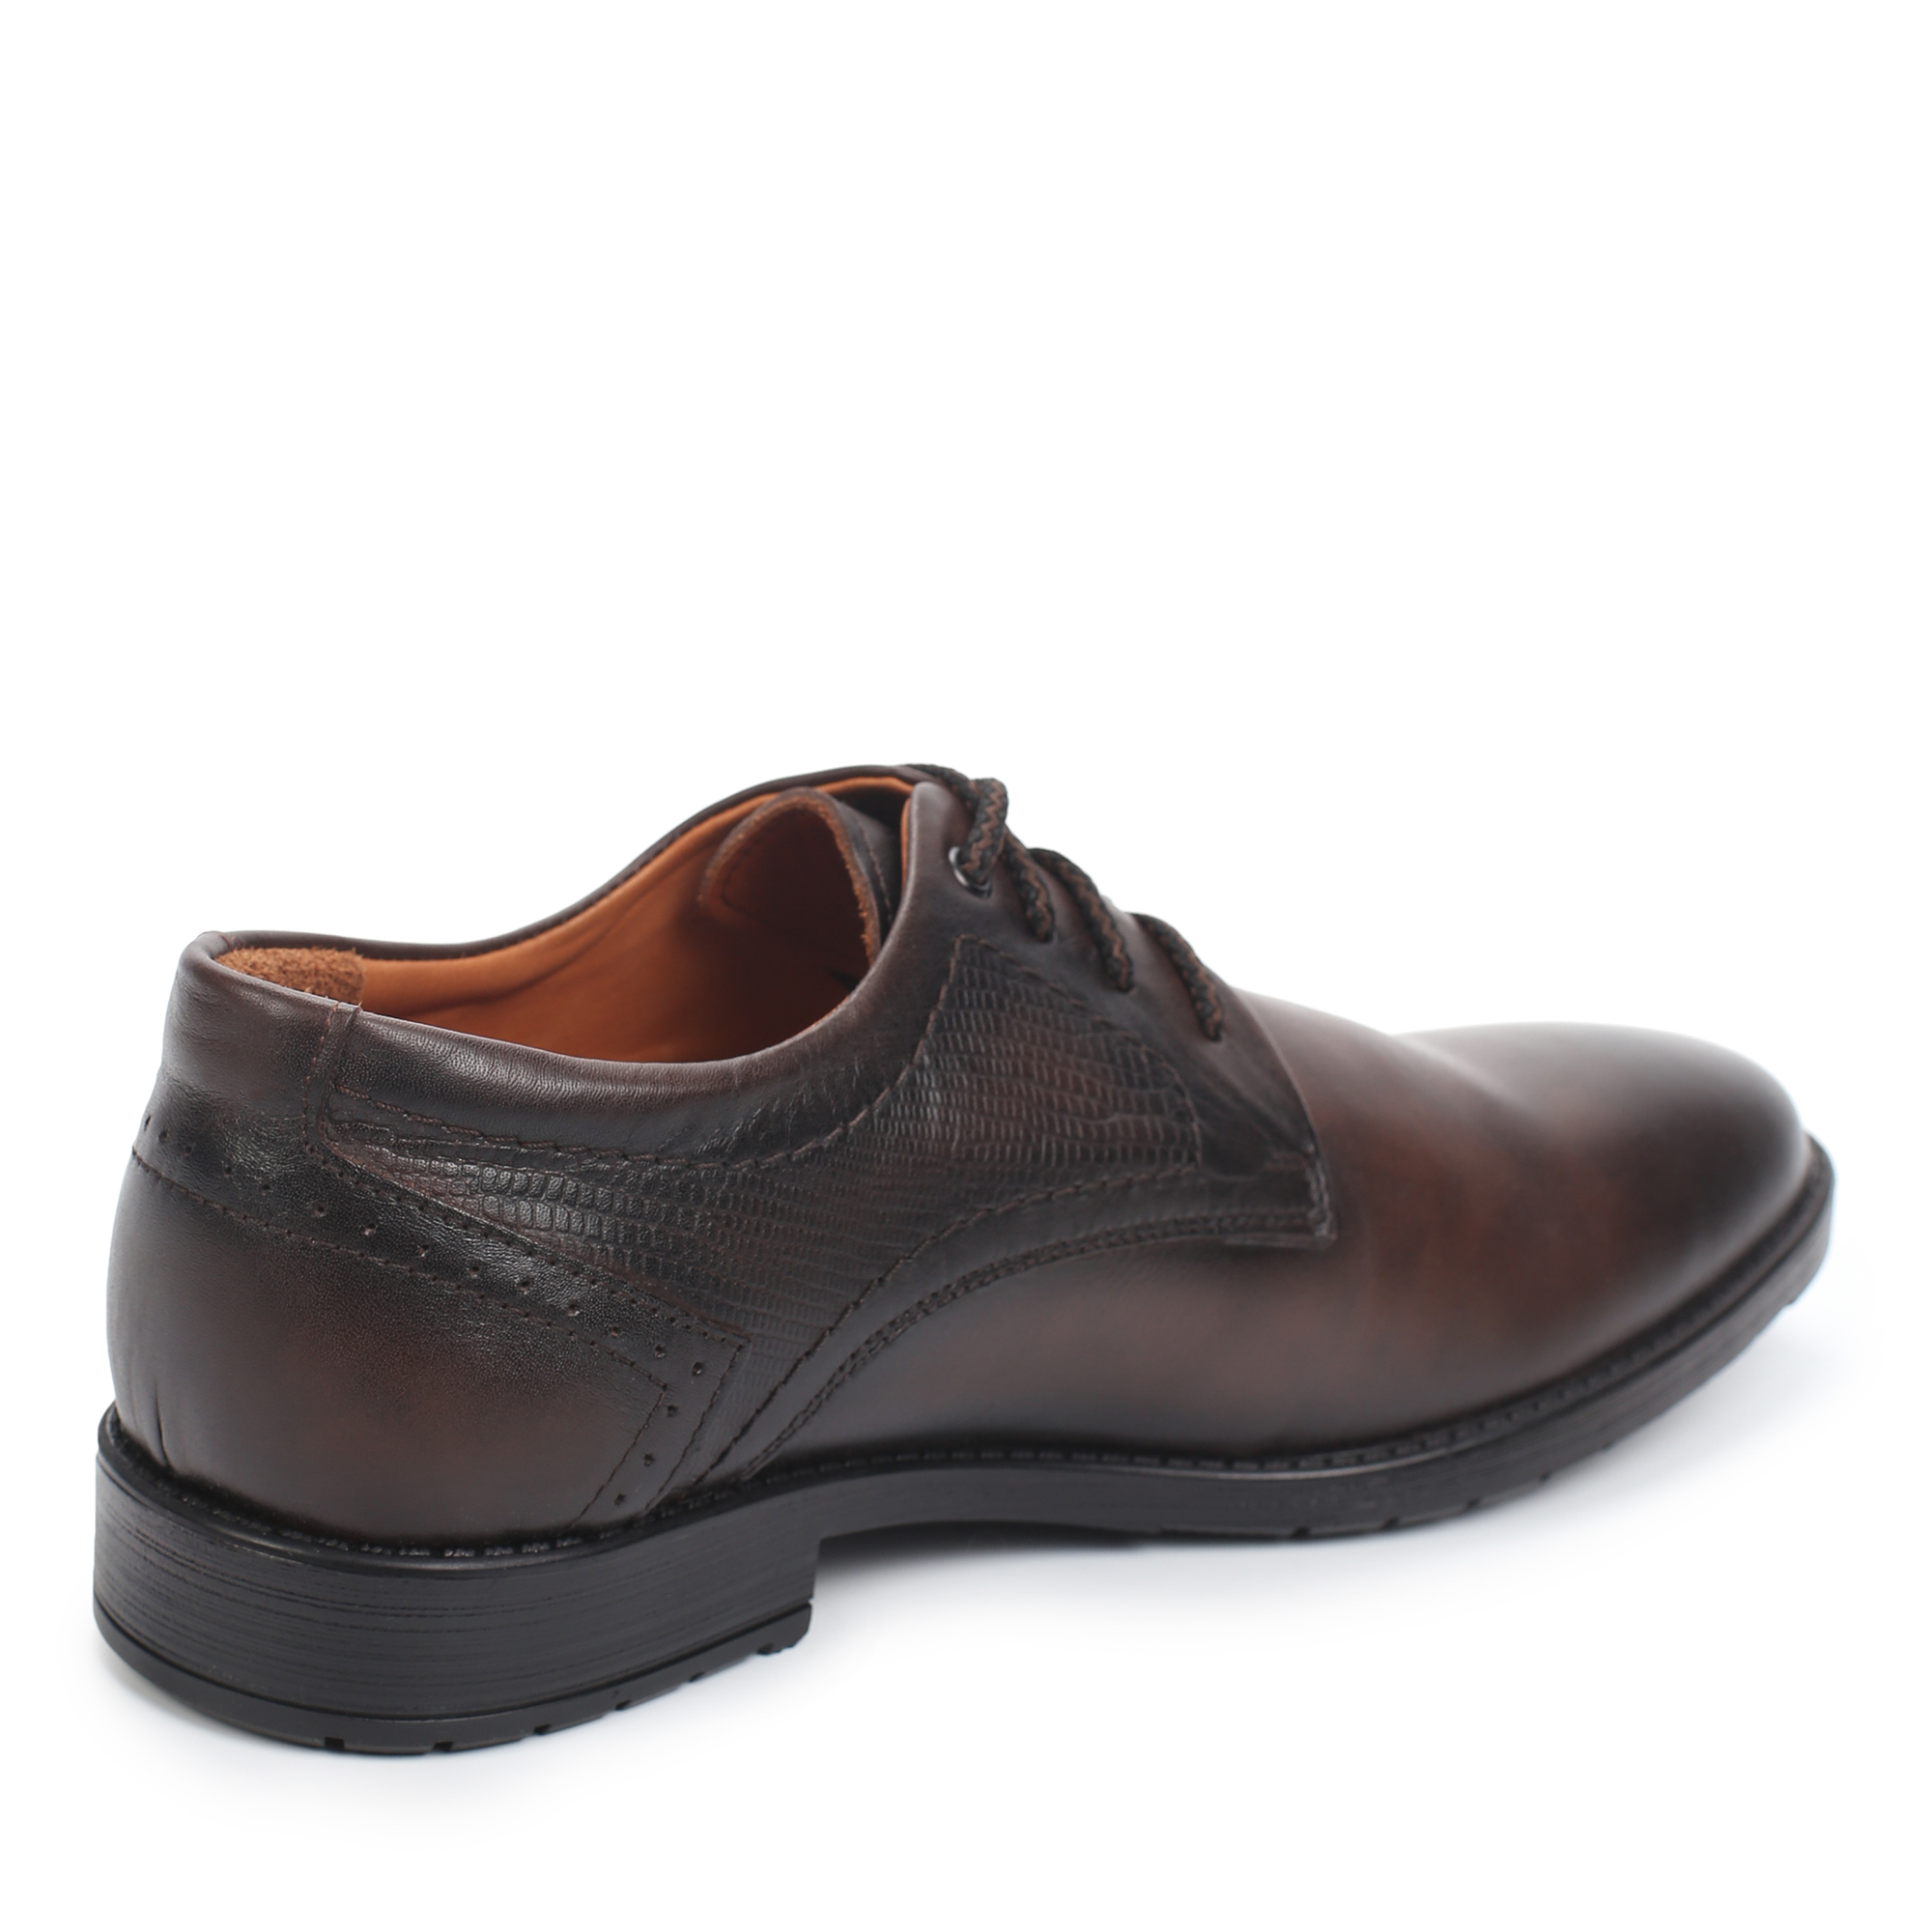 Туфли/полуботинки Thomas Munz 306-014B-1109, цвет коричневый, размер 41 - фото 3